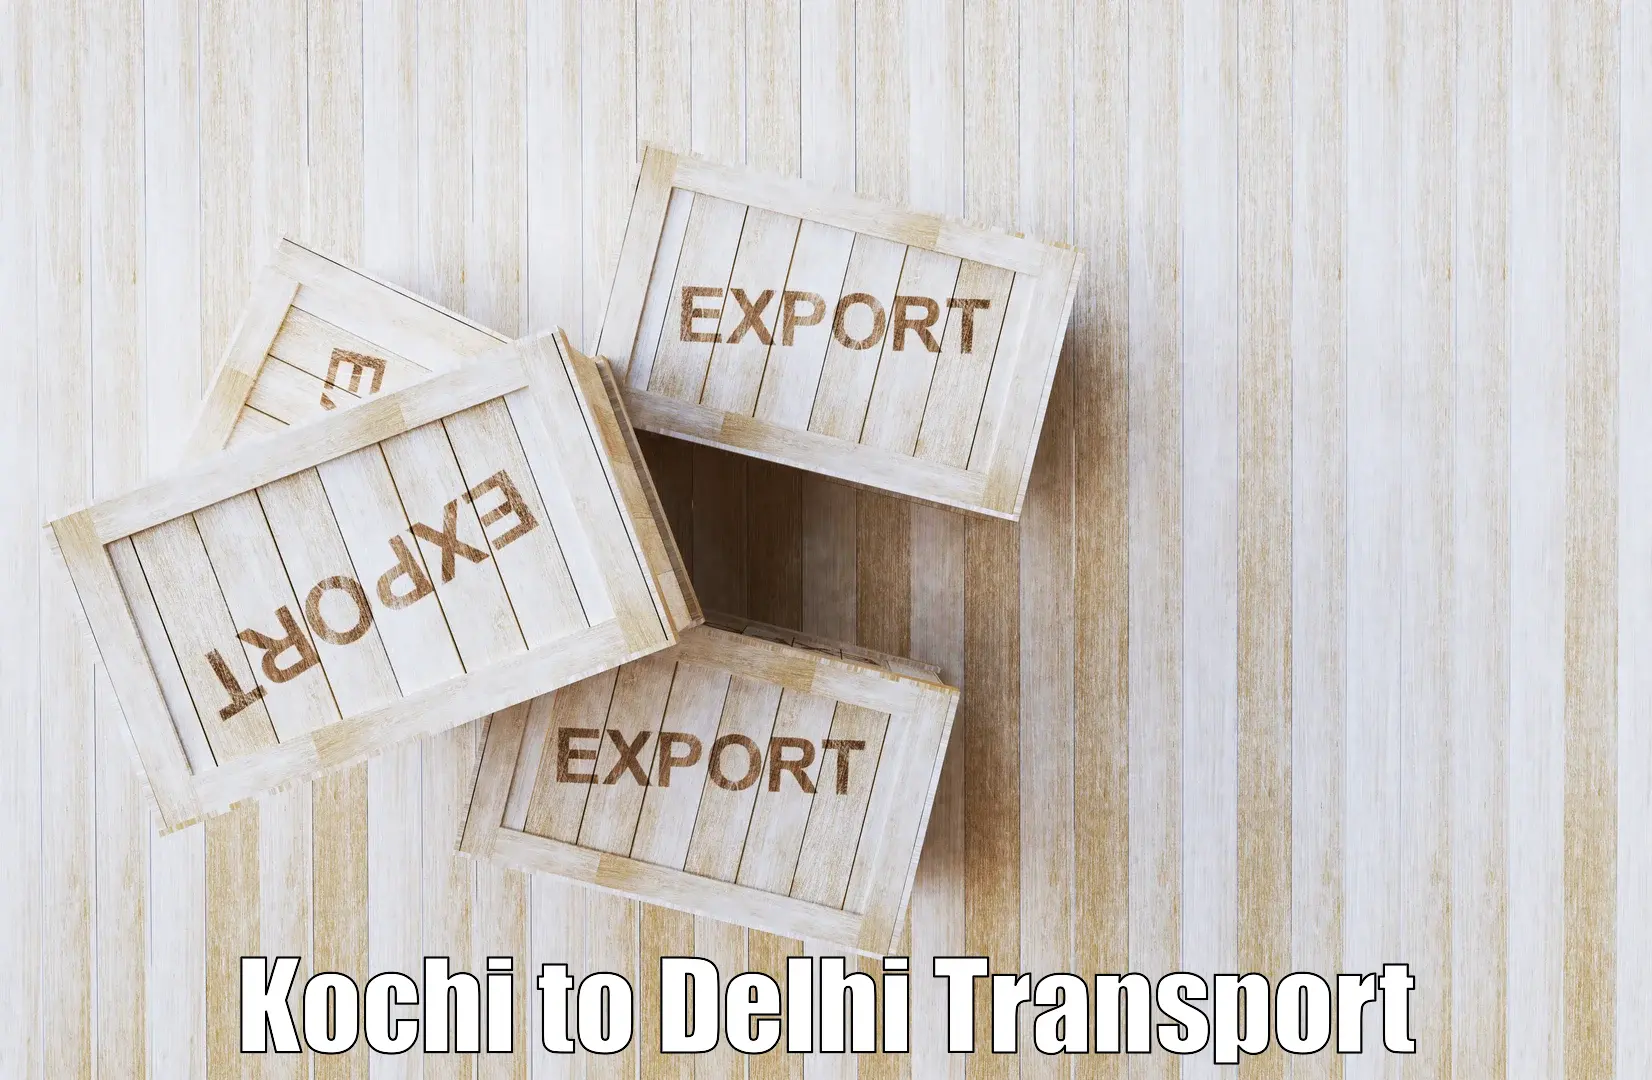 Intercity transport Kochi to Jawaharlal Nehru University New Delhi